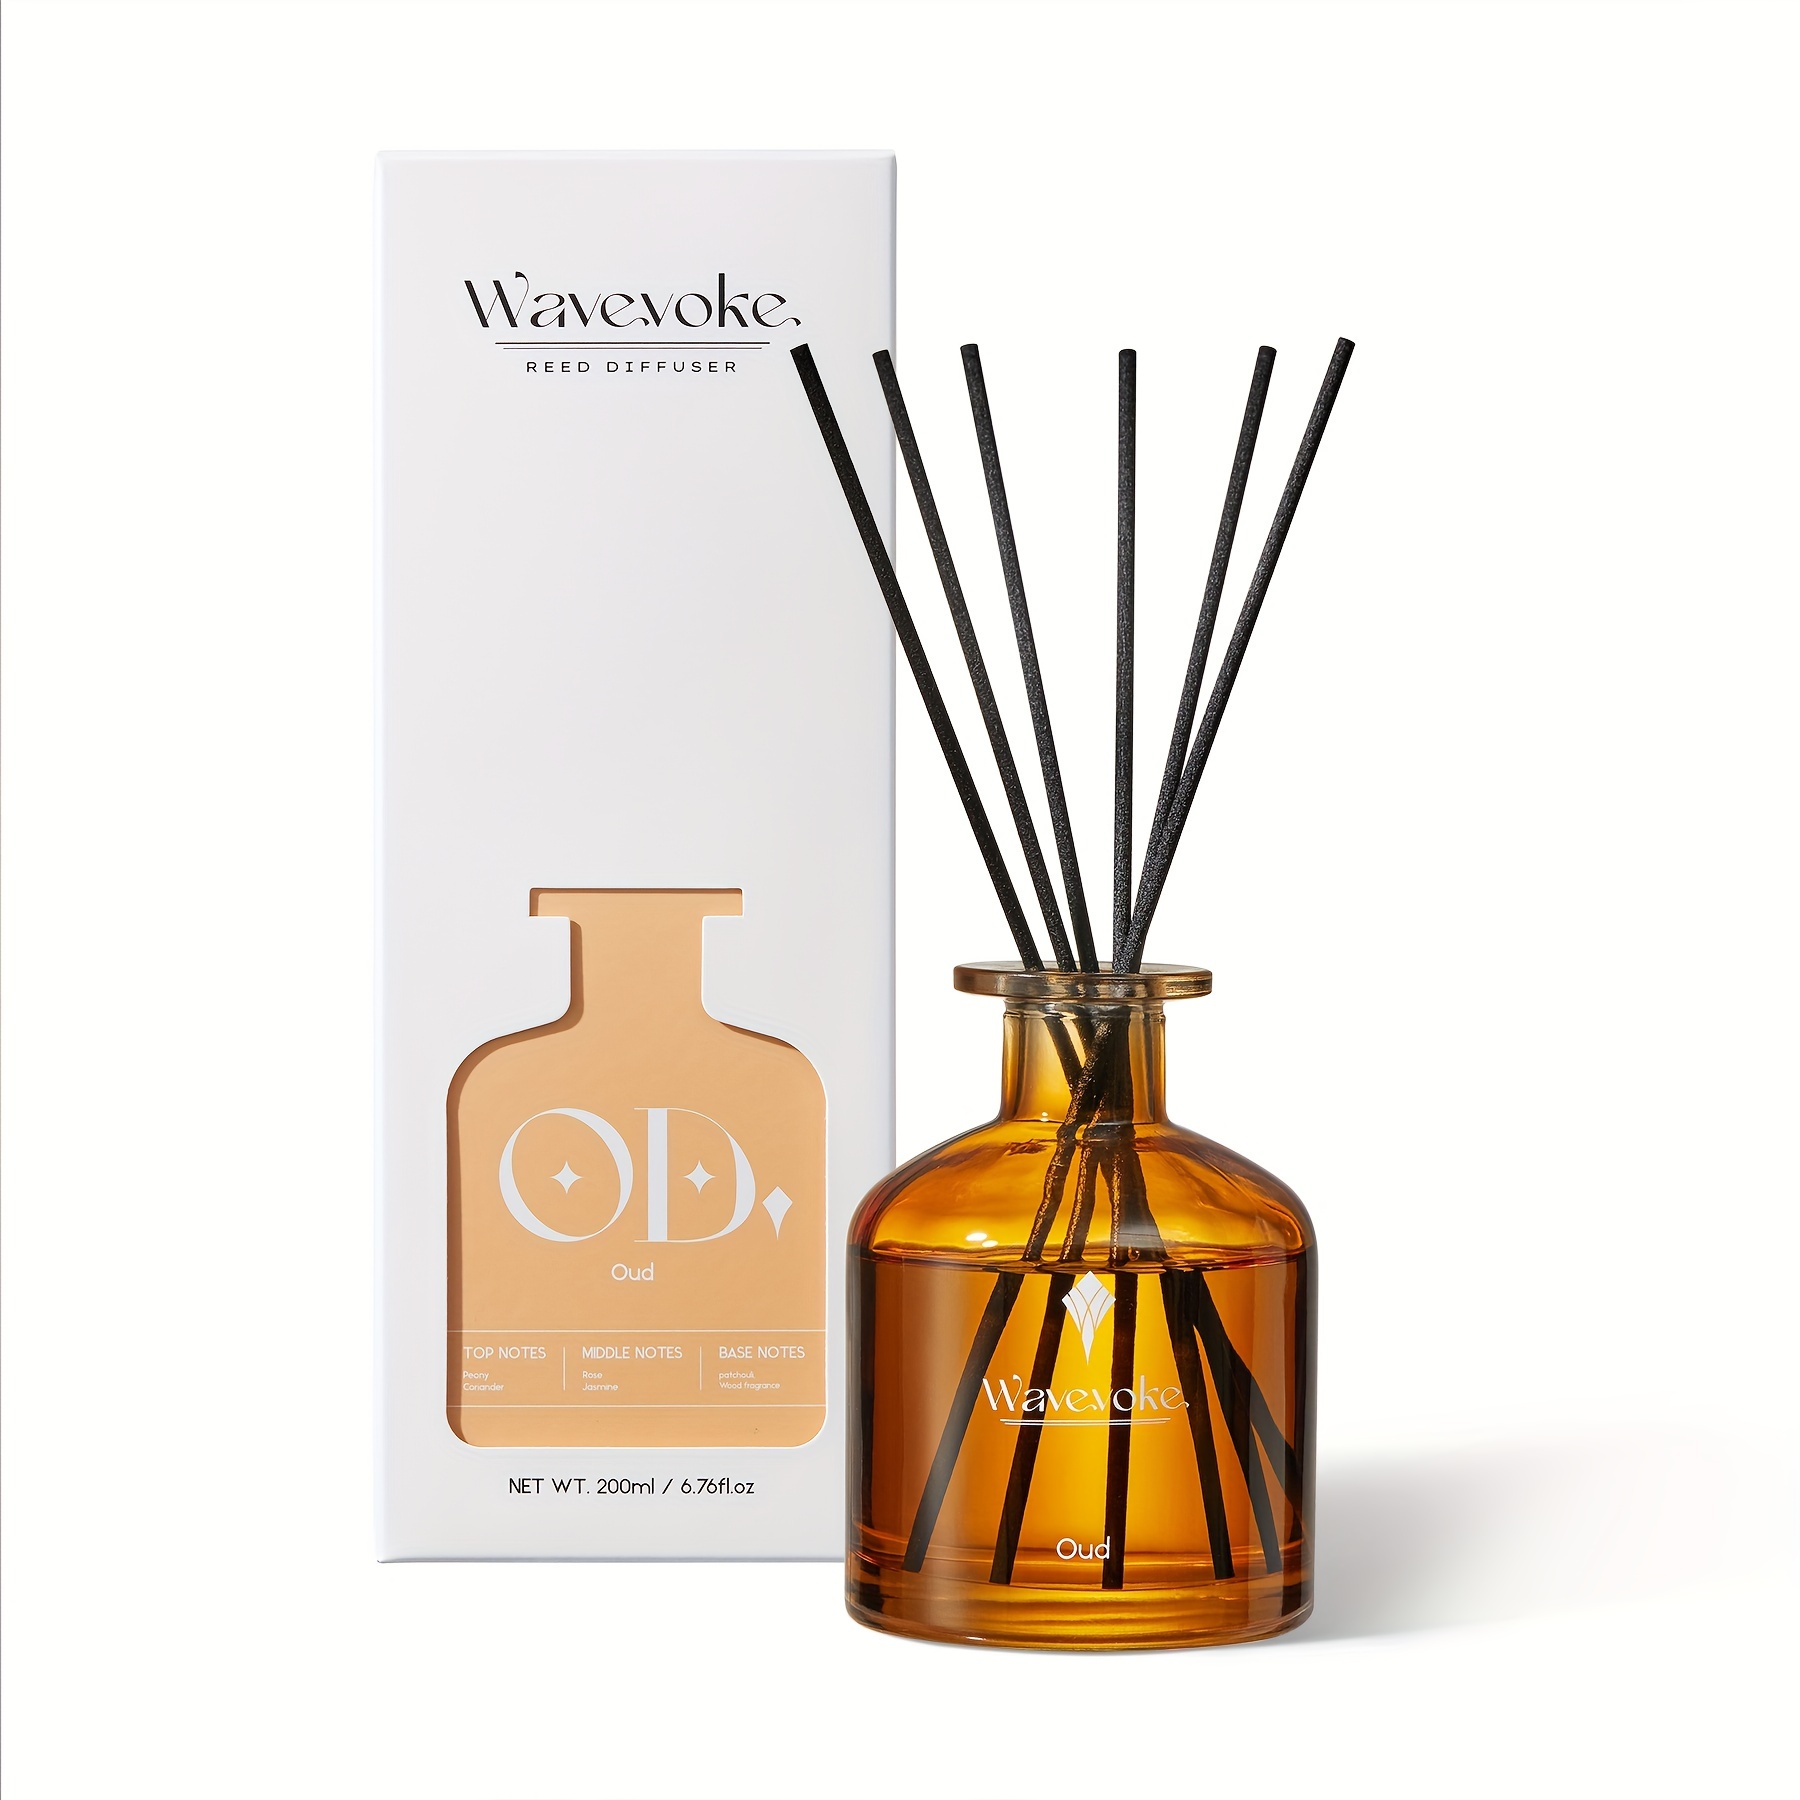 

Wavevoke-wood Fragrance Reed Diffuser Set 6.7 Oz - Oil Diffuser Sticks Ensure 90 Days Of Scent For Serene Bedroom Atmosphere